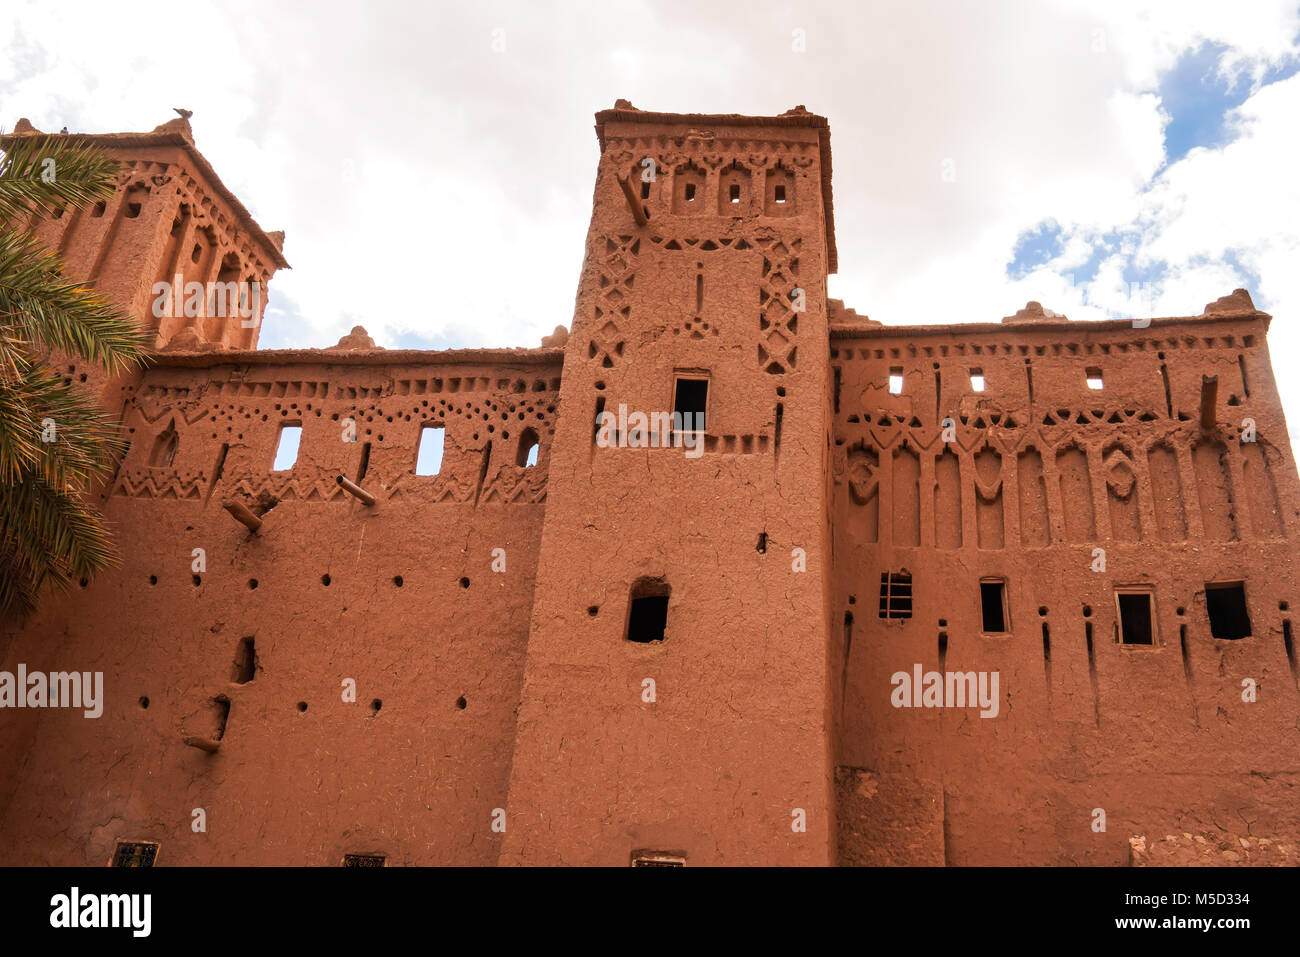 Antica città di Ait Benhaddou situata lungo l'antica via carovana tra il Sahara e Marrakech, nell'attuale Marocco. Foto Stock